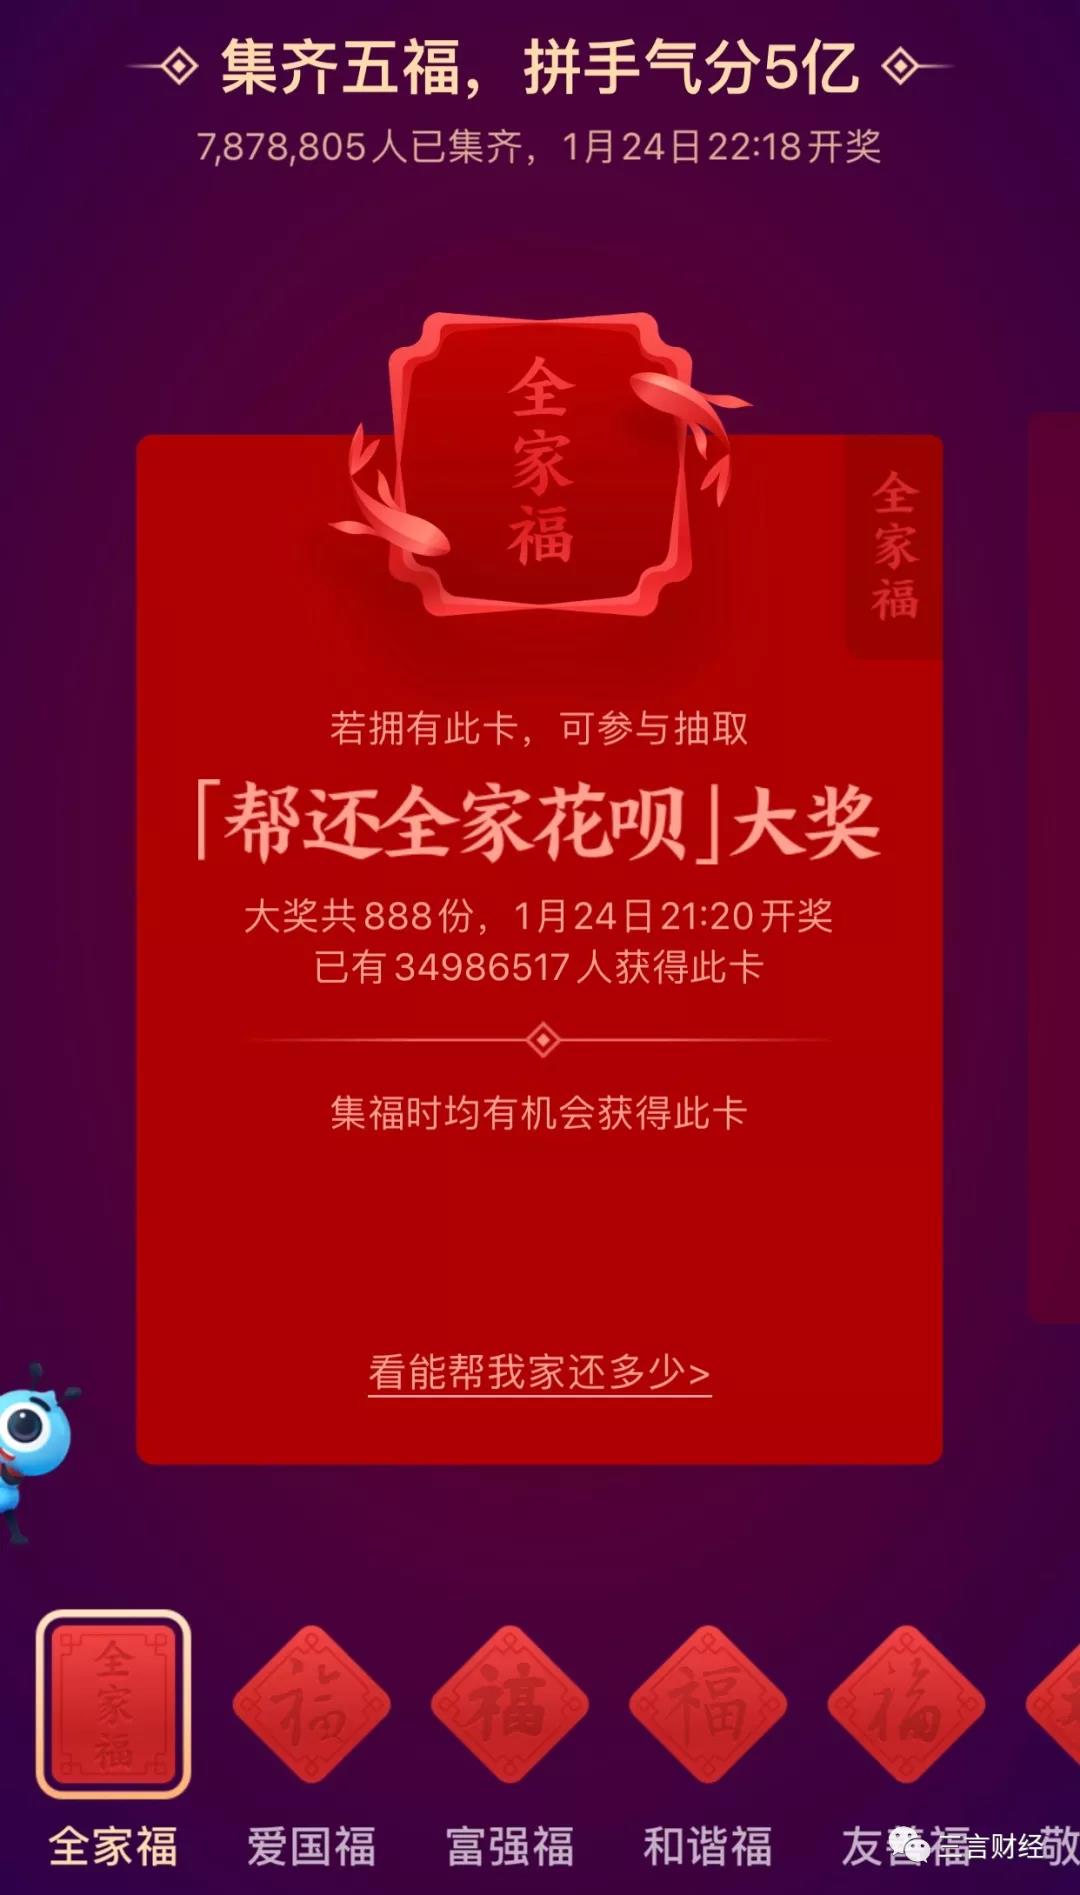 互联网春节红包大战PK：谁最“实诚”？谁最“难”？